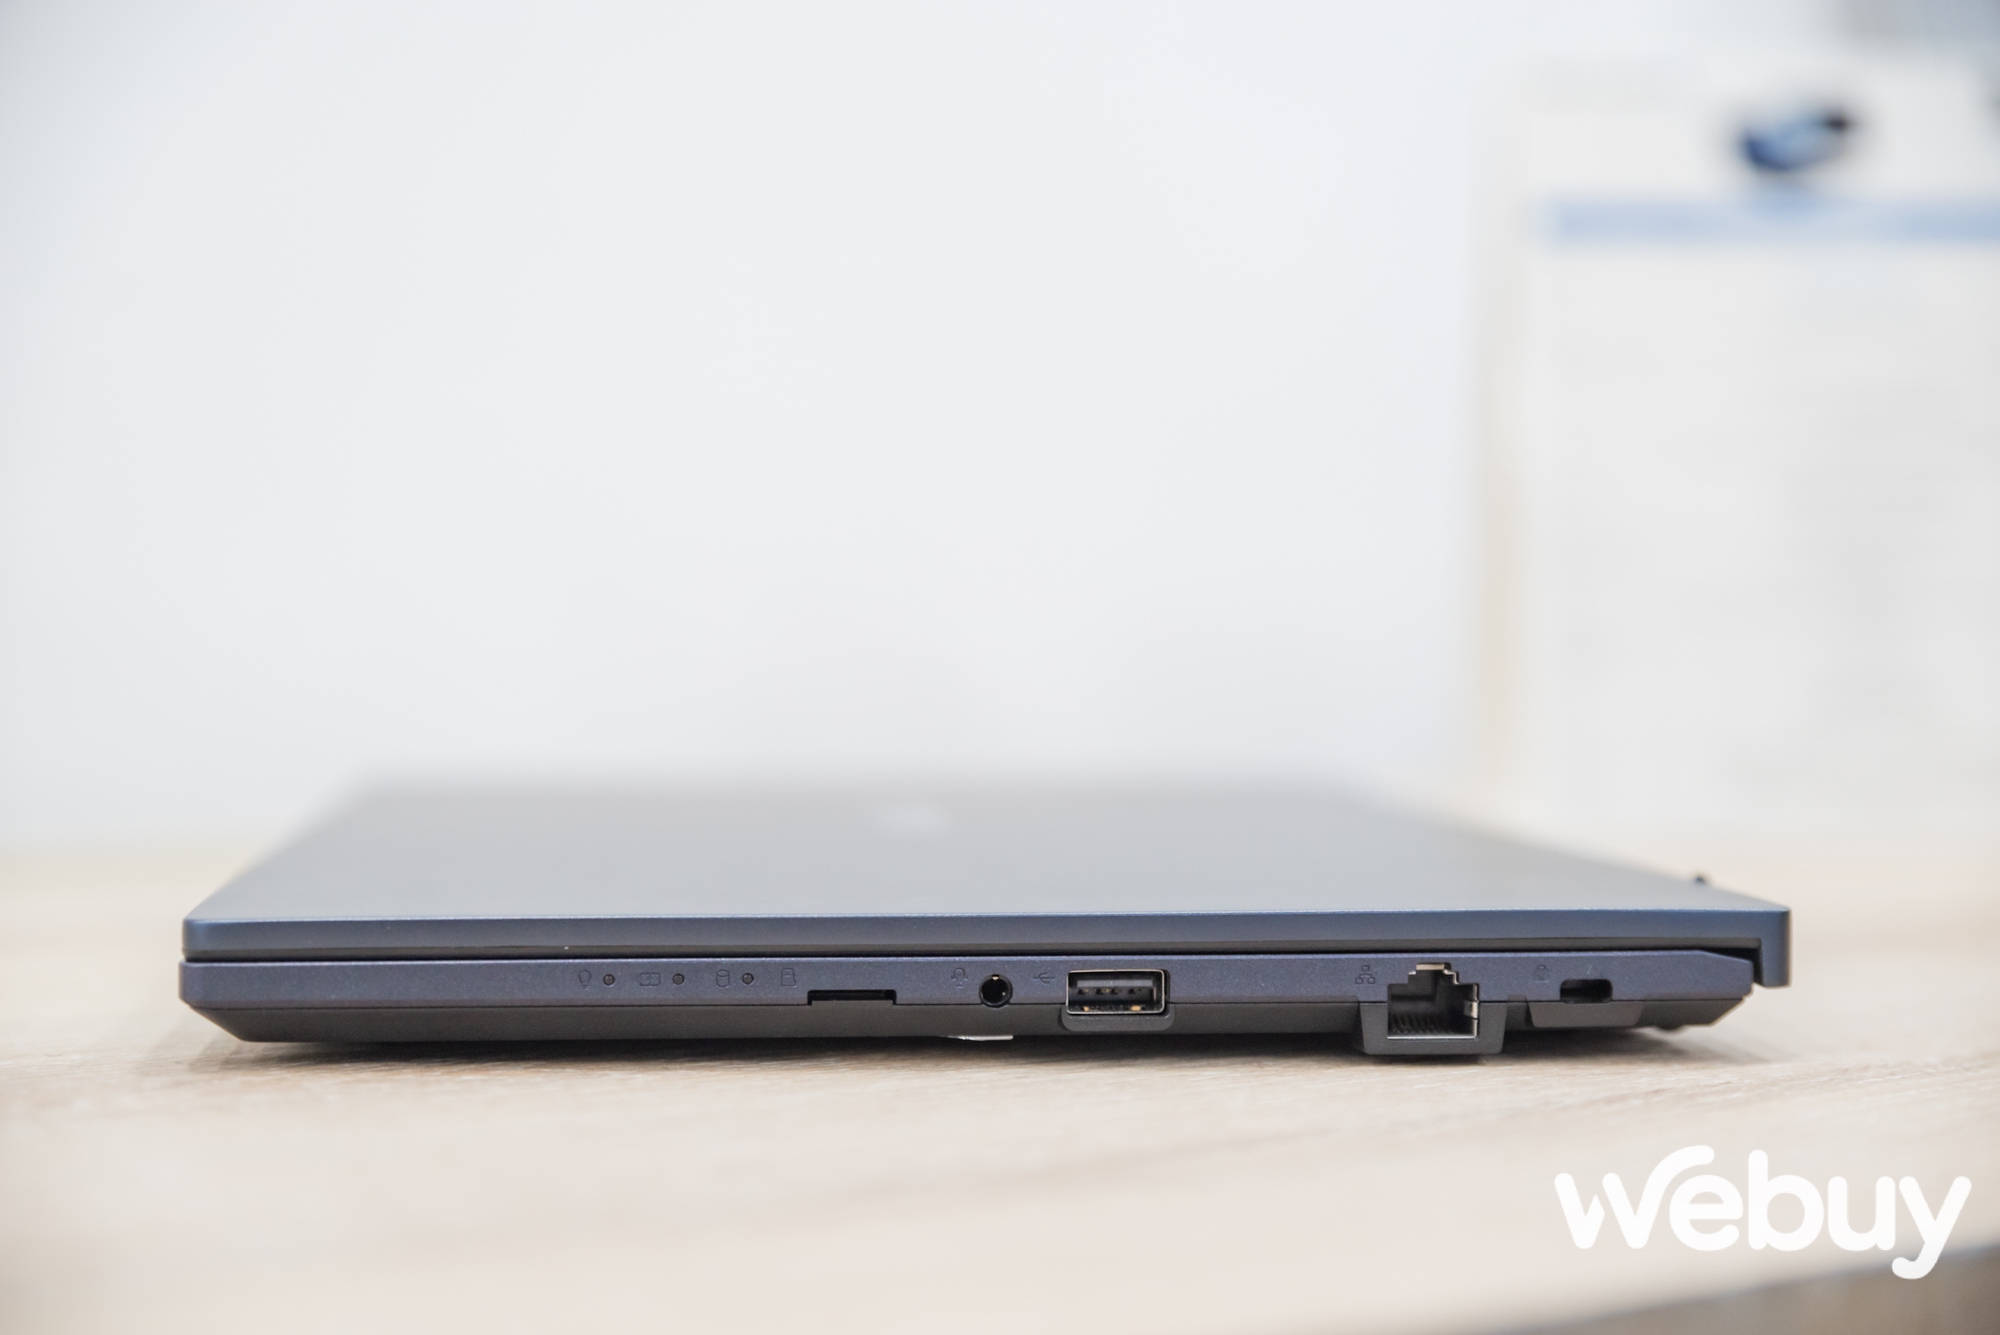 ASUS giới thiệu loạt laptop ExpertBook thế hệ mới, đa dạng lựa chọn hướng đến đối tượng khách hàng doanh nghiệp - Ảnh 10.